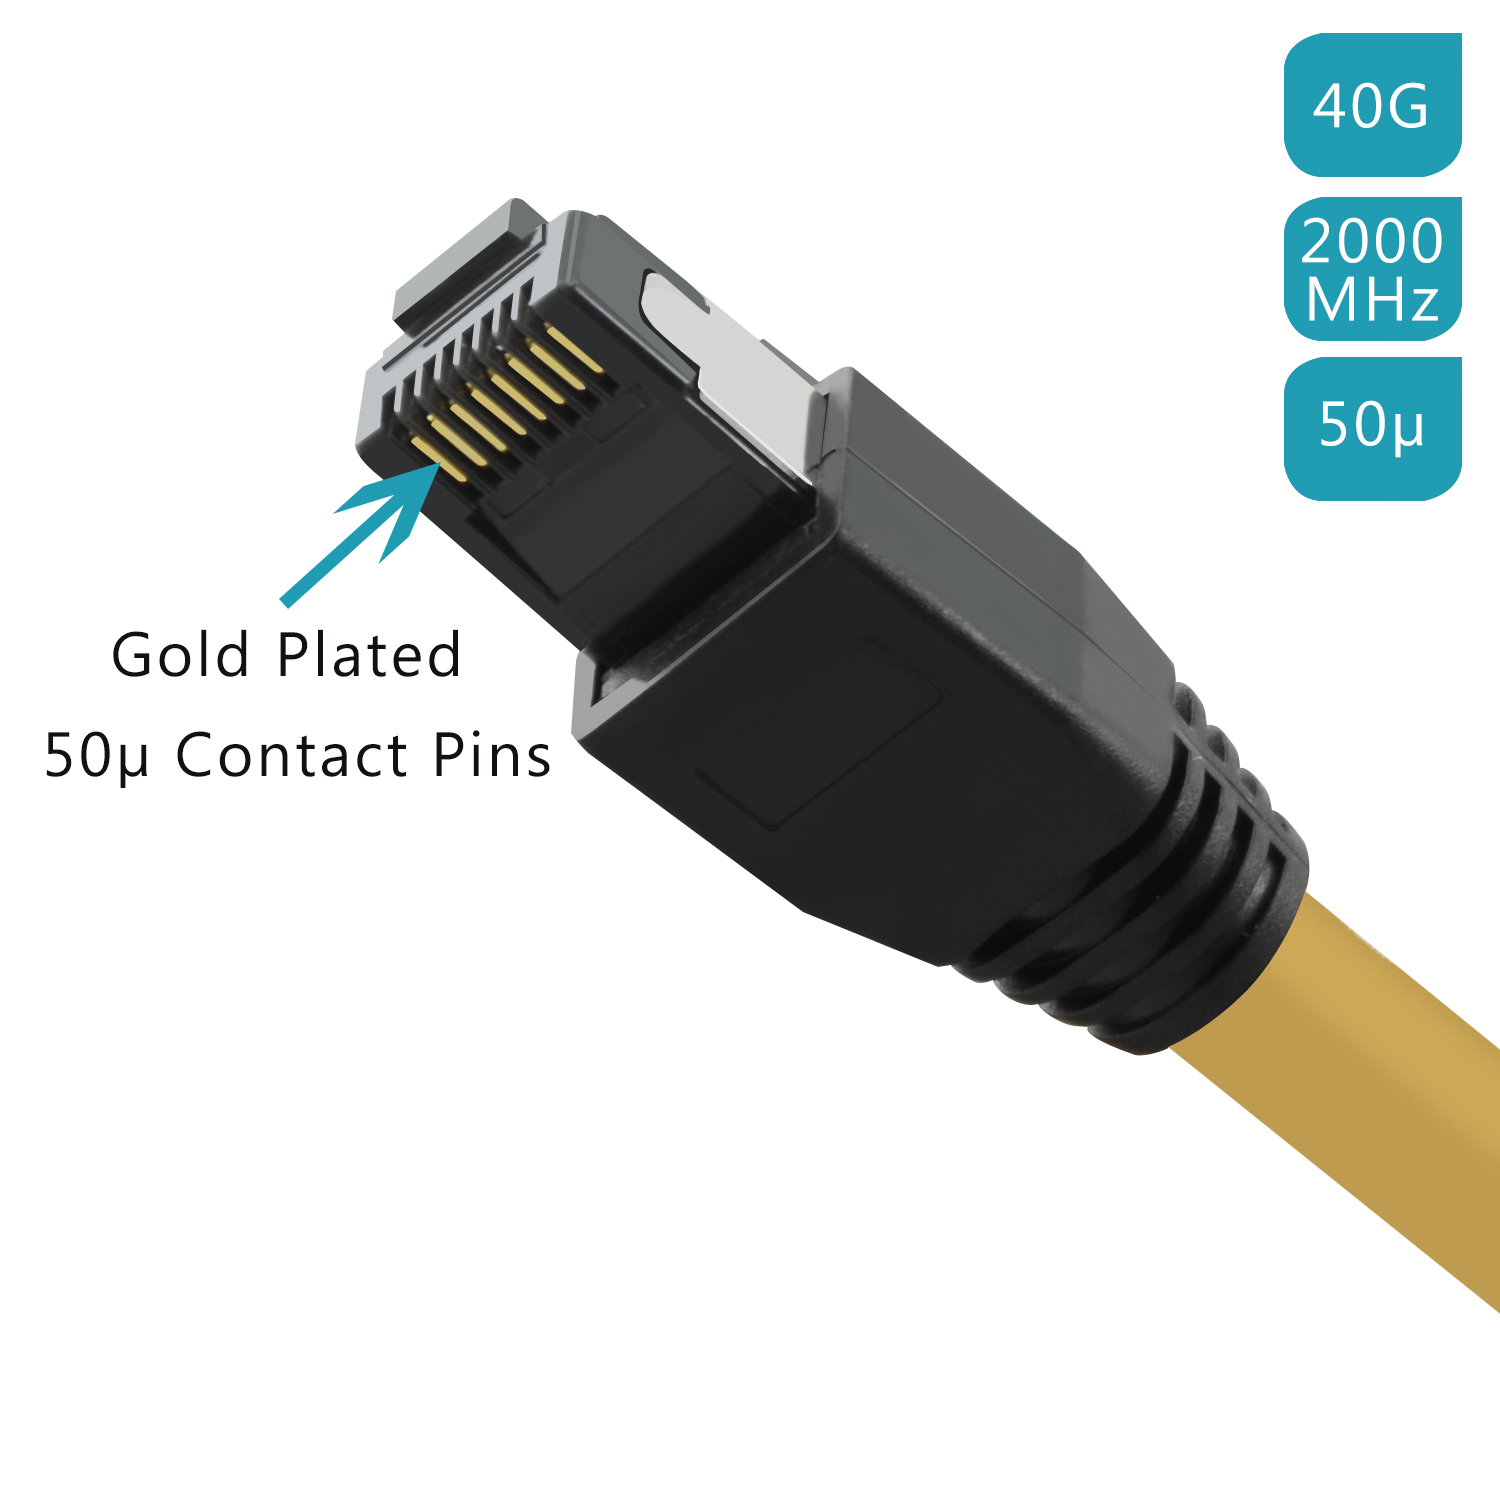 TPFNET 3m 3 gelb, Patchkabel Netzwerkkabel, 40 m / Netzwerkkabel GBit, S/FTP